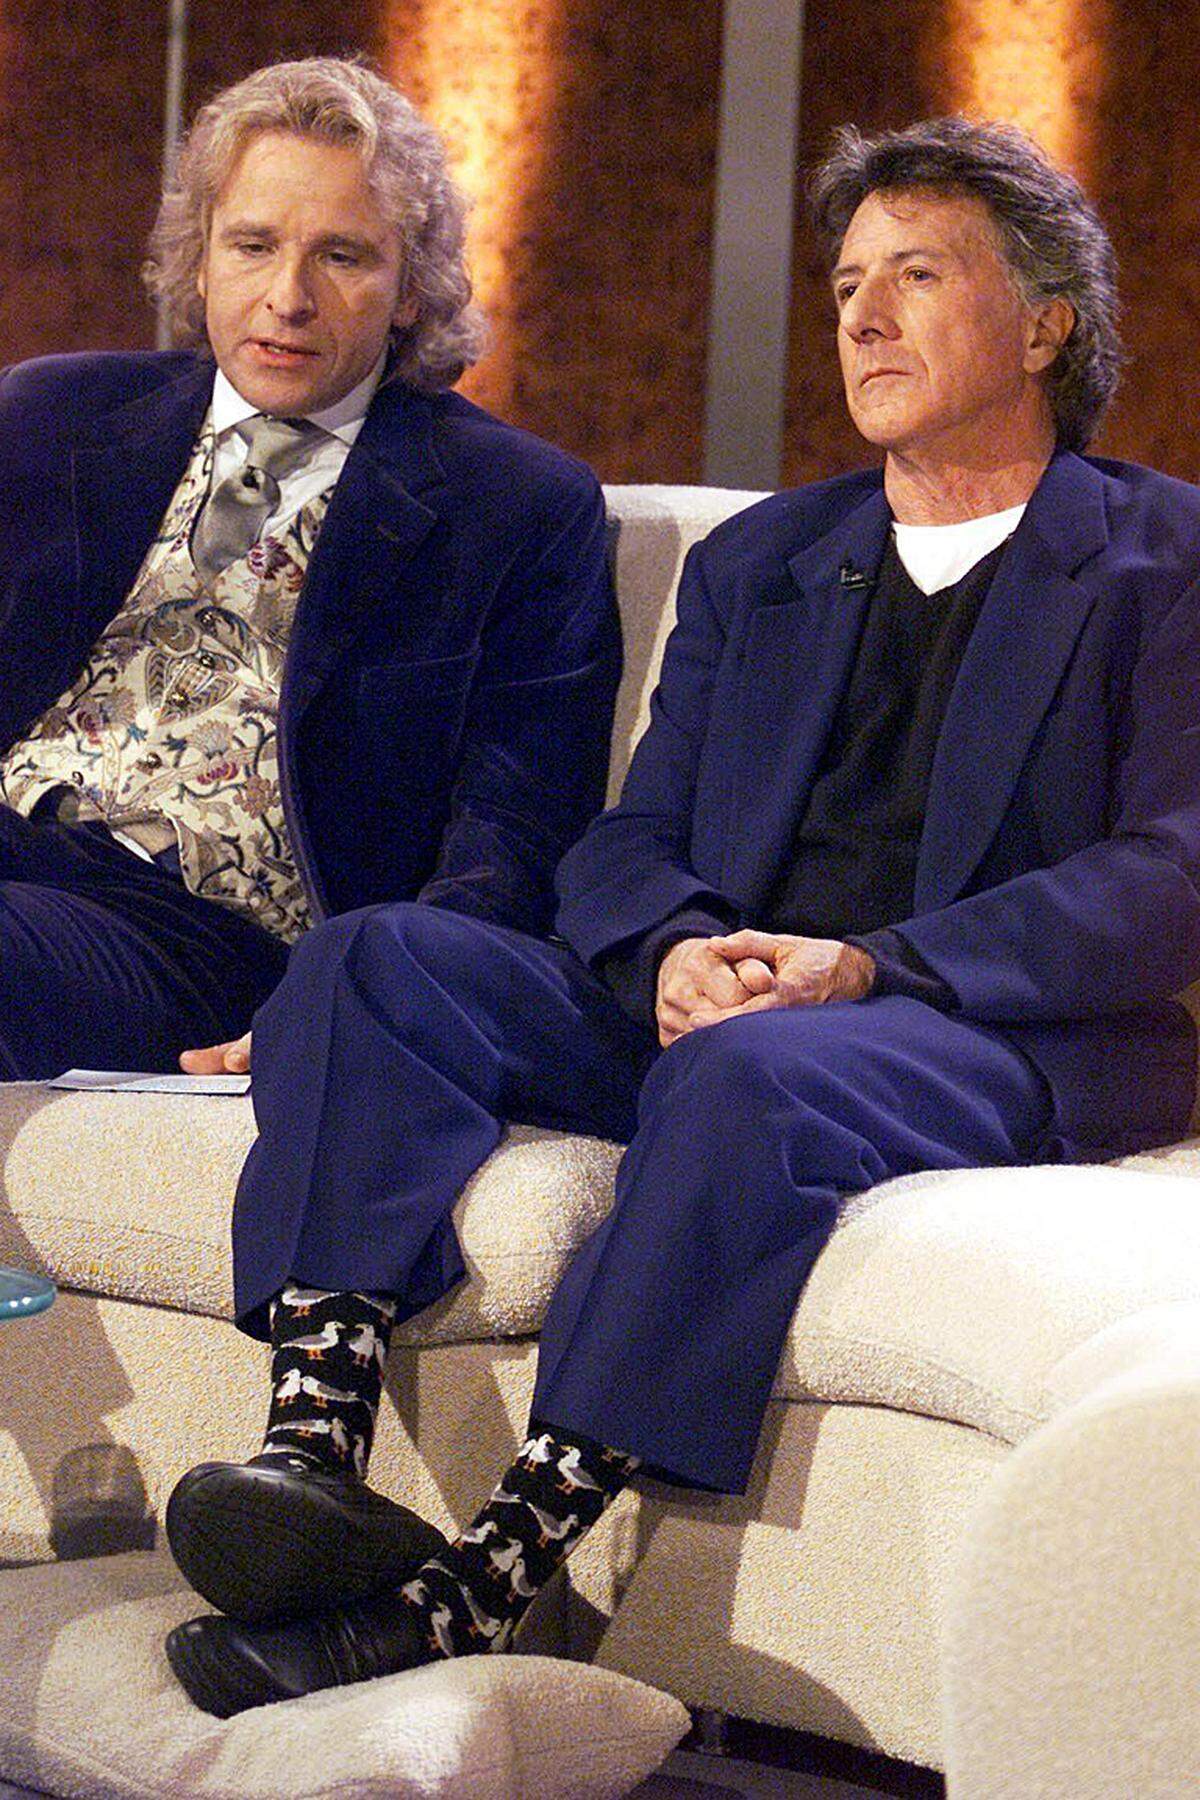 2002 war US-Schauspieler Dustin Hoffman in Leipzig zu Gast. Der nicht gerade großgewachsene Mime bat als Unterlage für seine Füße um ein Kissen, um bequem auf dem Sofa sitzen zu können.